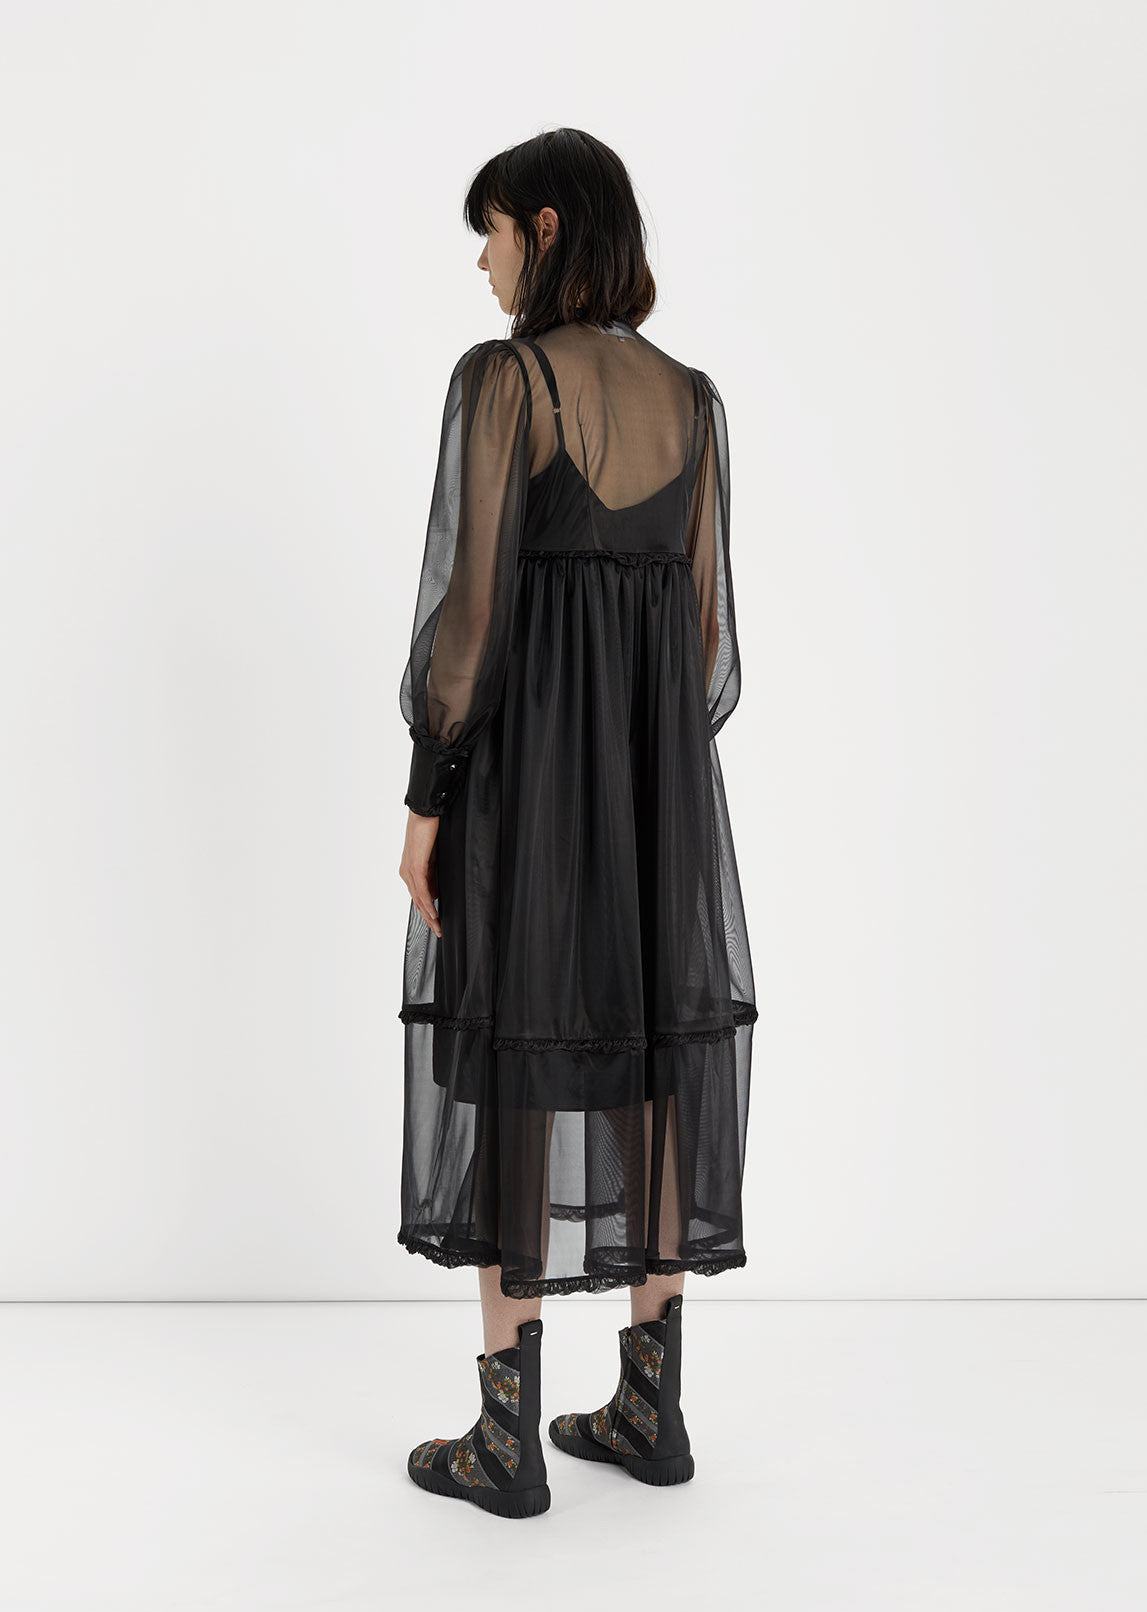 Transparent Jersey Dress by Maison Margiela - La Garçonne